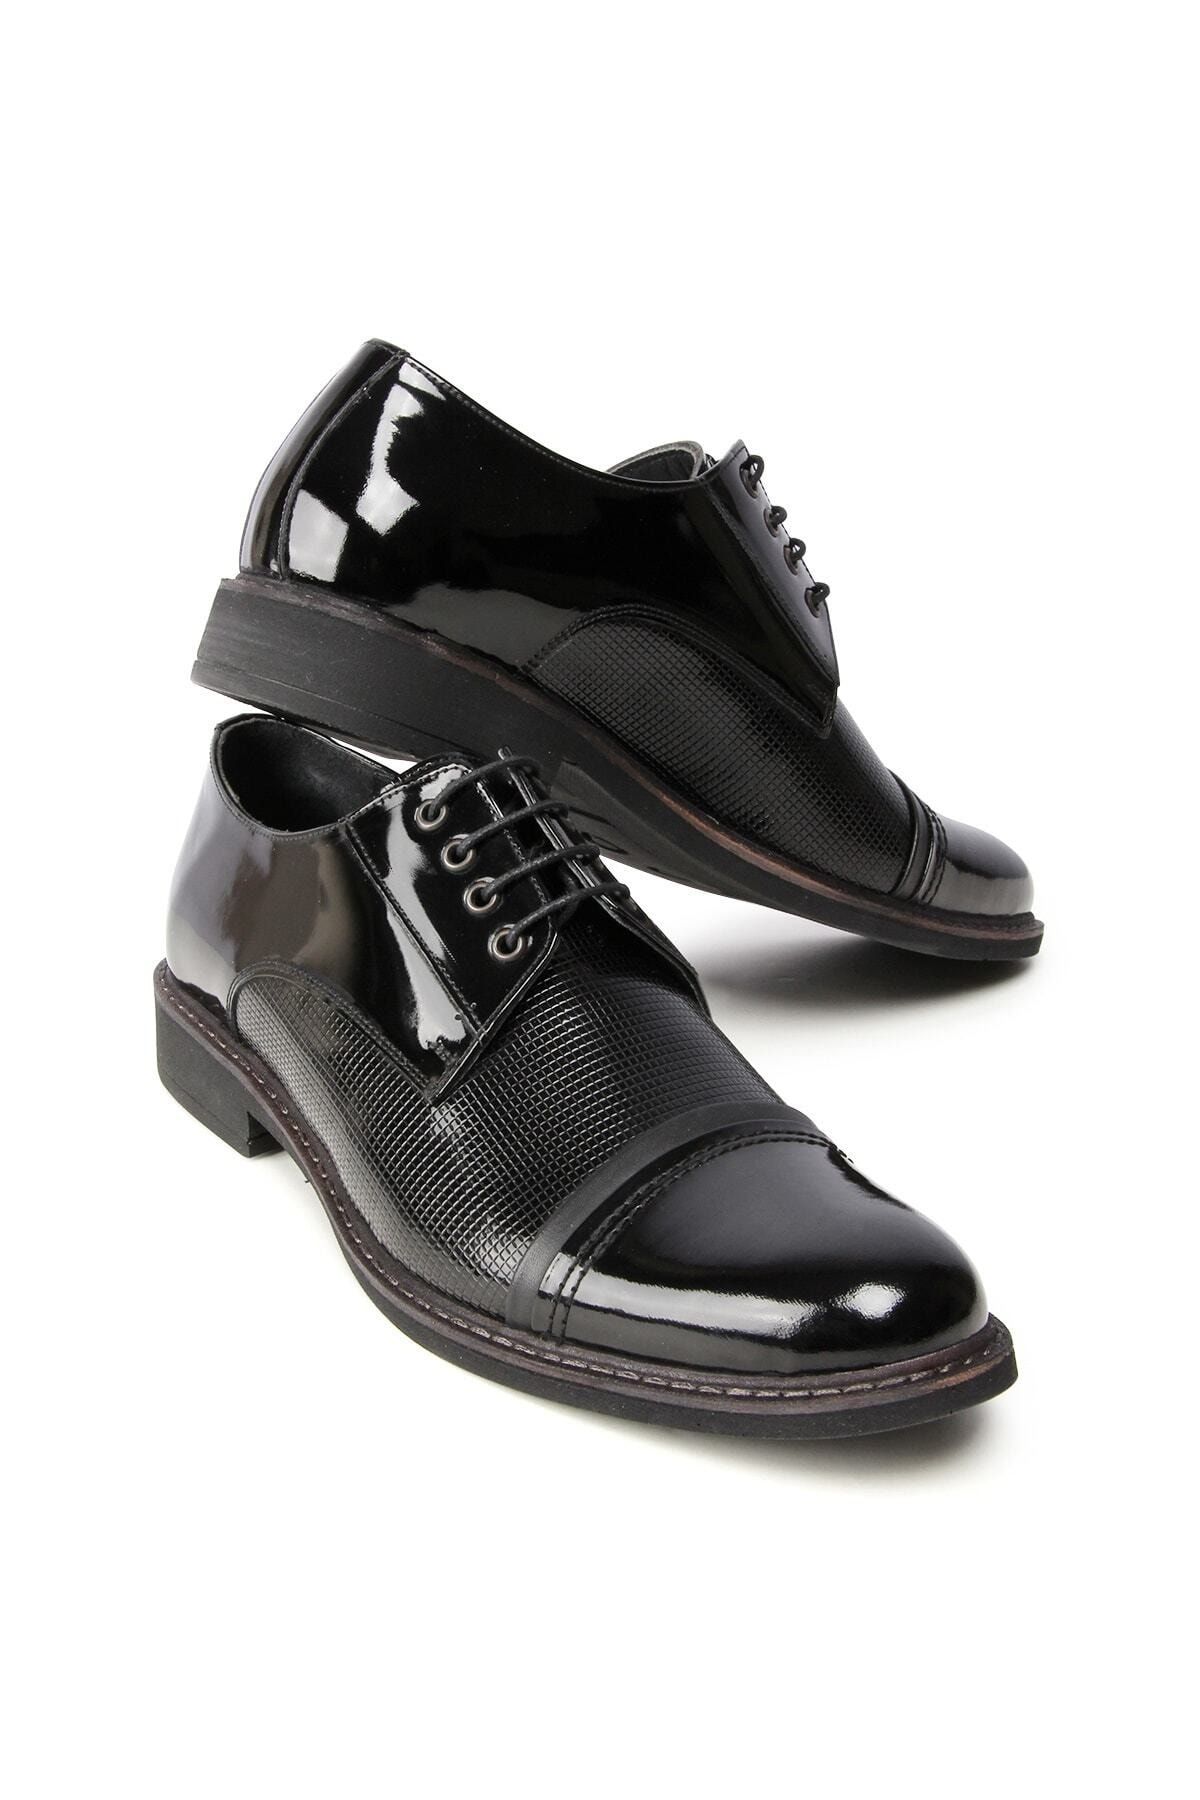 Bay Pablo E169 Siyah Hakiki Deri Klasik Bağcıklı Erkek Ayakkabı